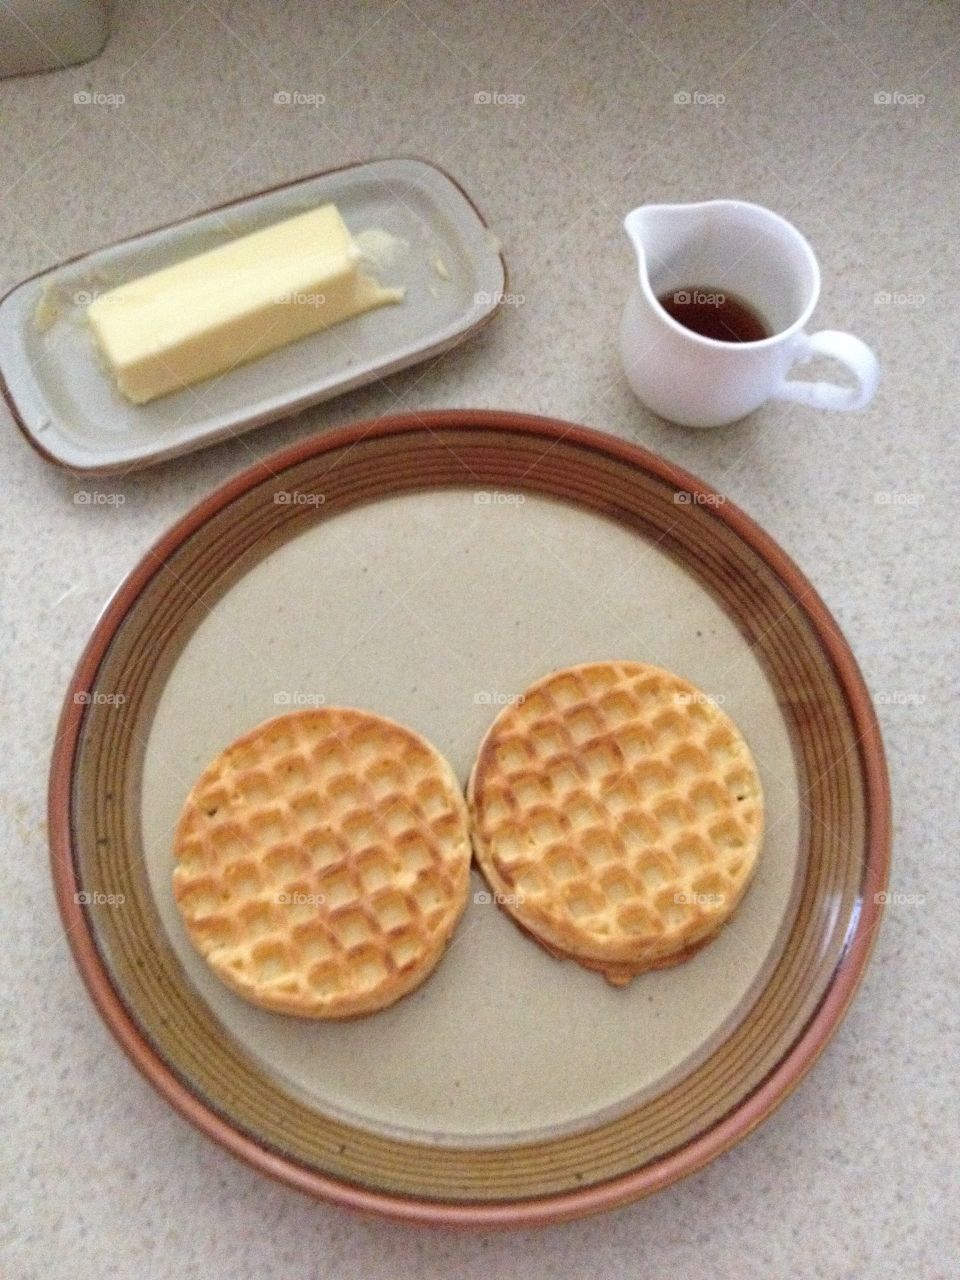 Breakfast waffles